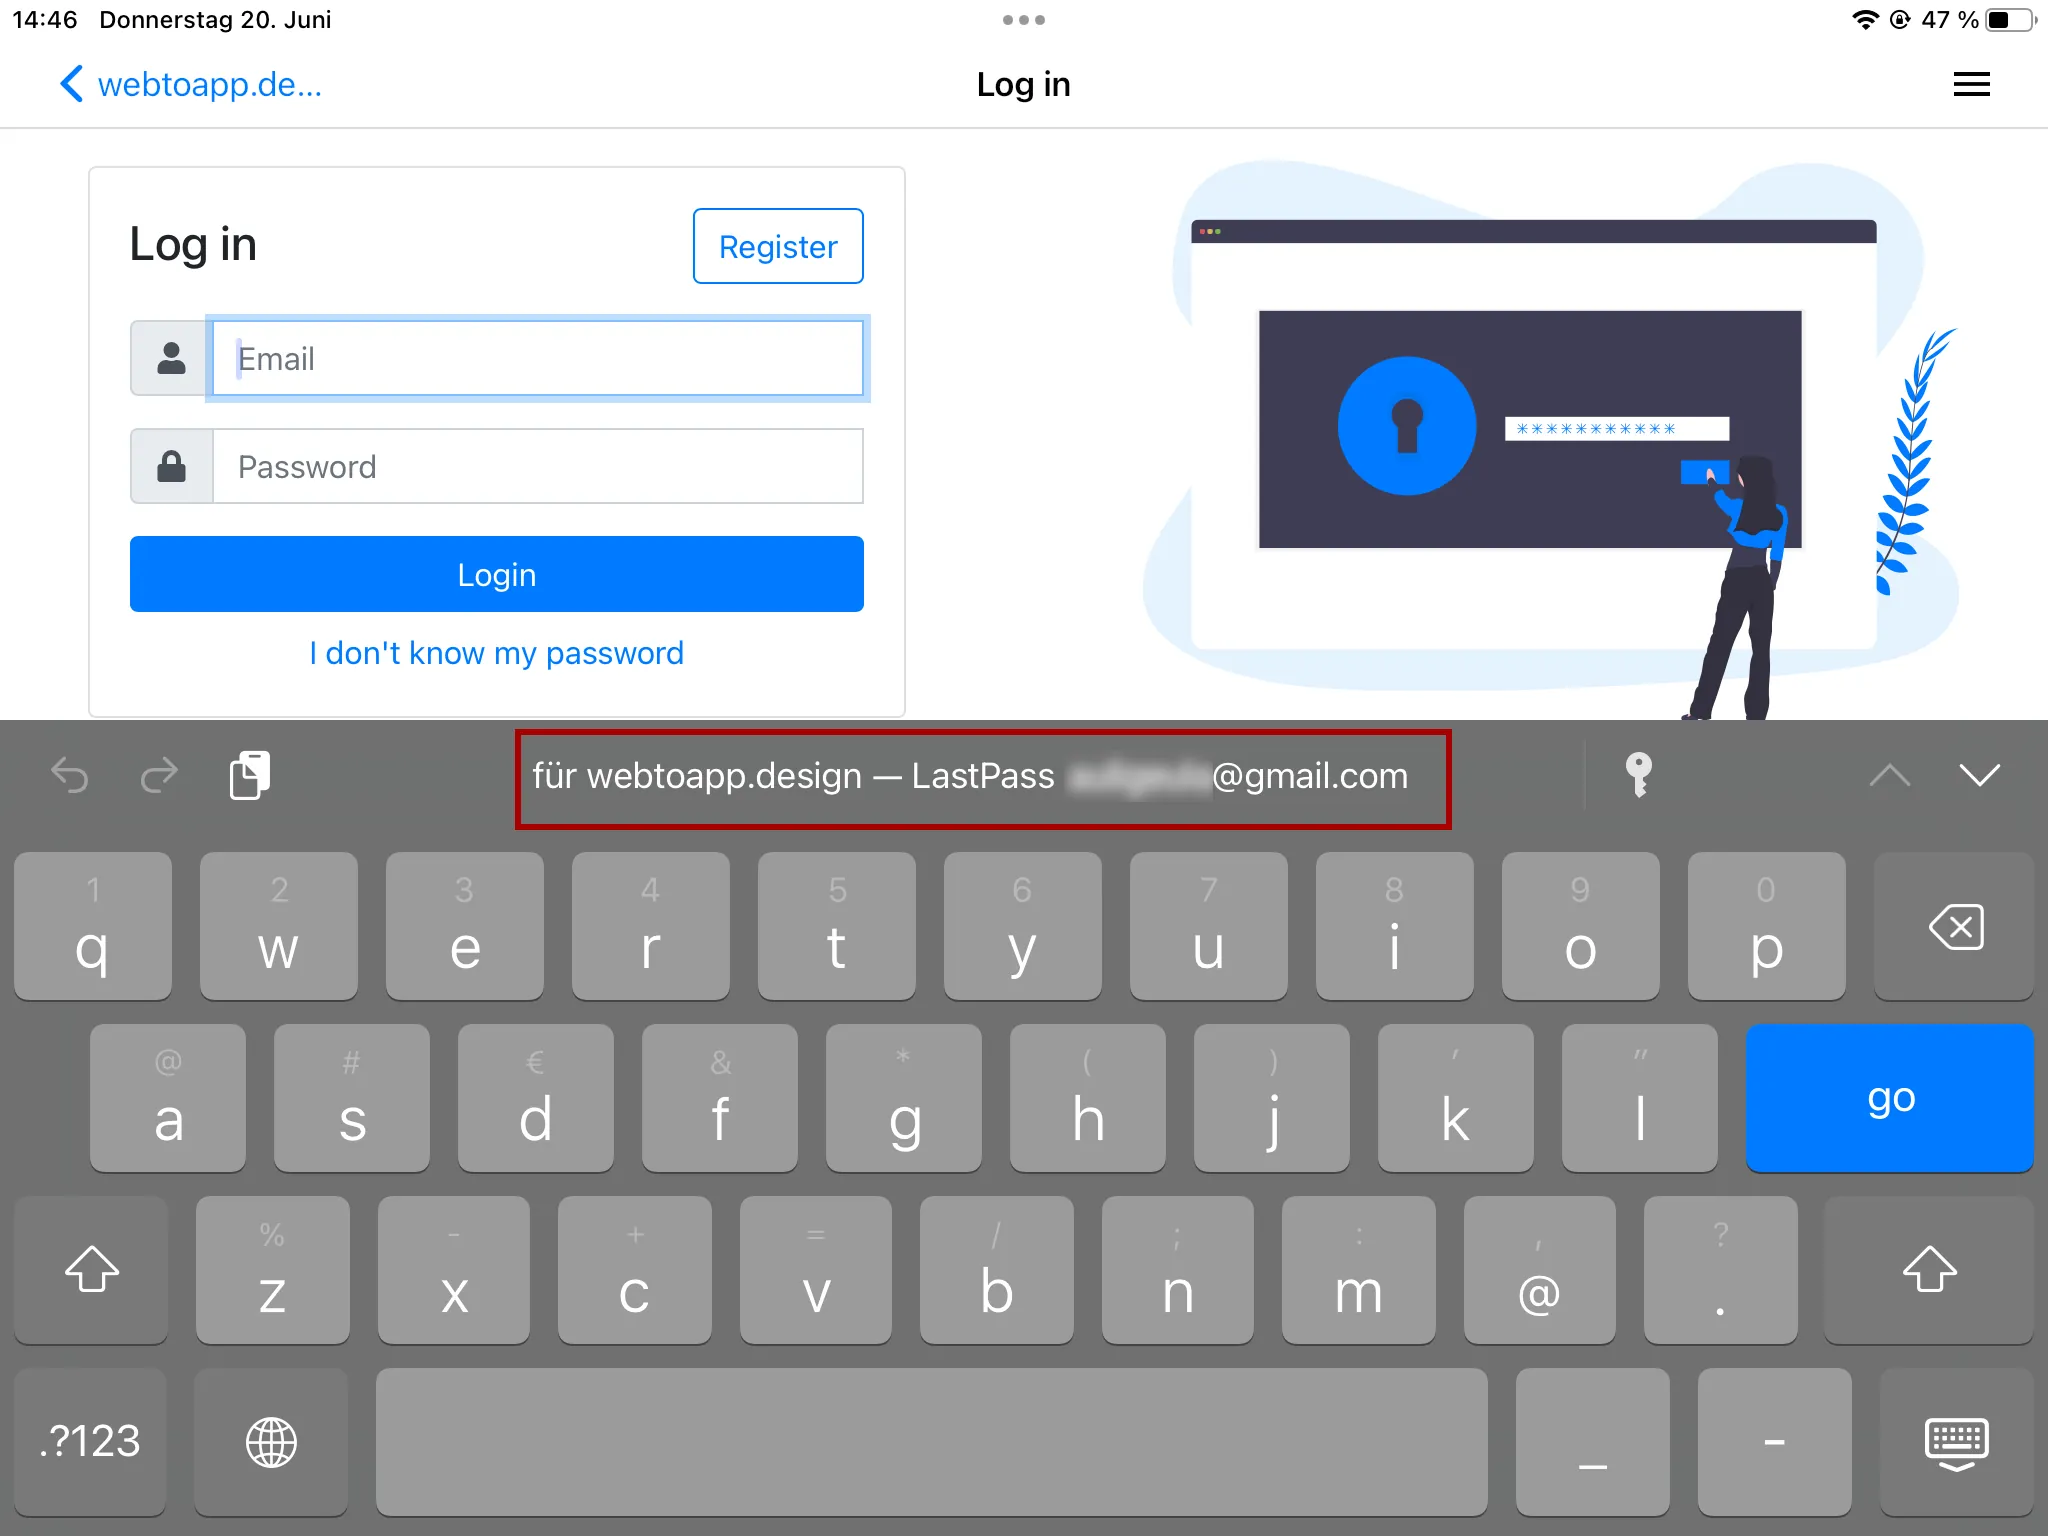 Een screenshot van het iOS-toetsenbord dat aanbiedt om automatisch de inloggegevens in te vullen die zijn opgeslagen voor de webtoapp.design-app met LastPass.